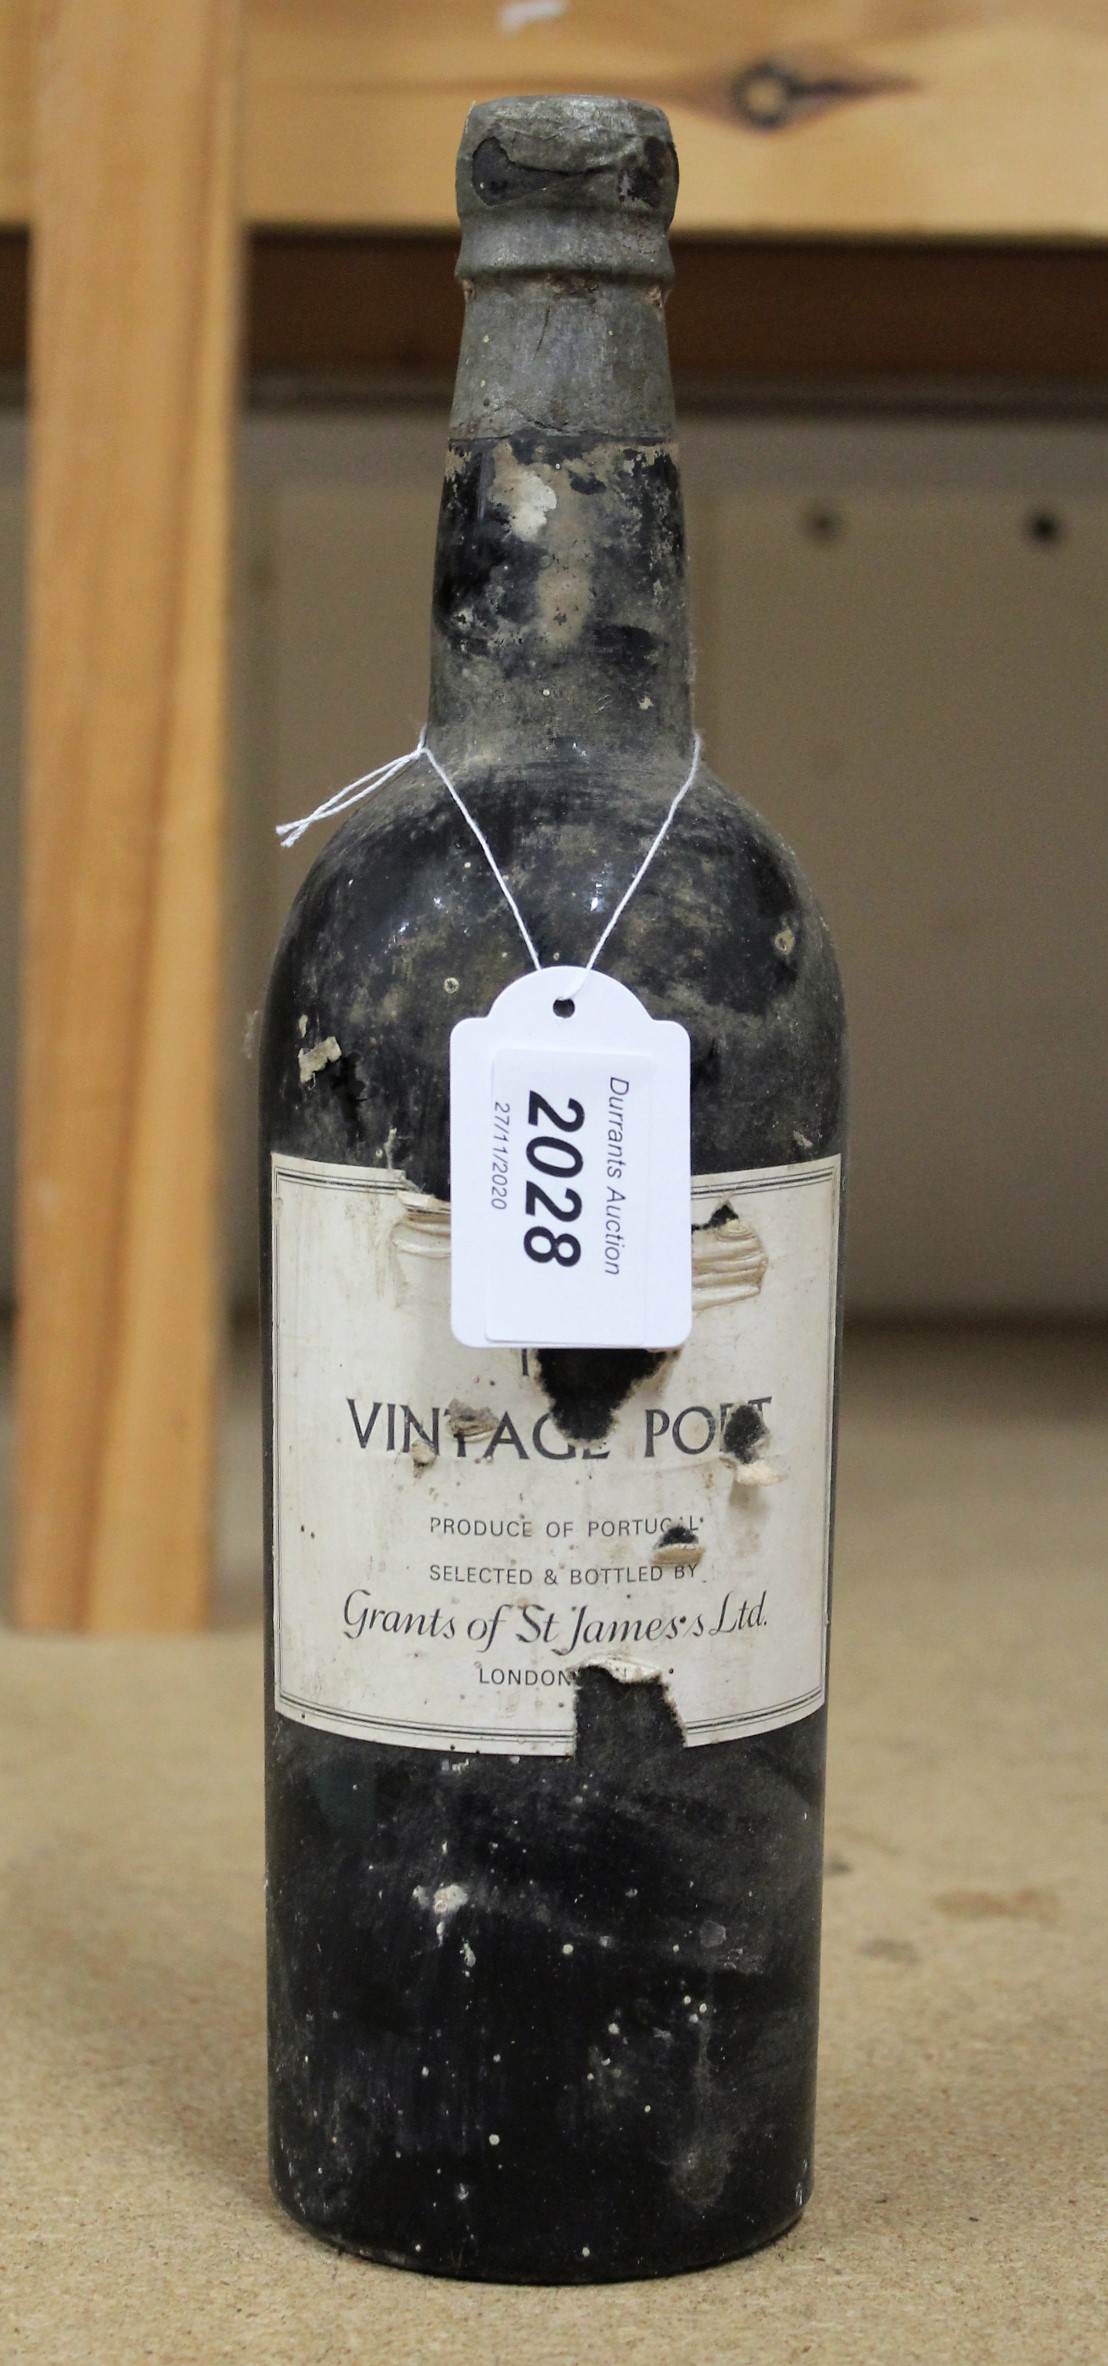 A bottle of Warre's 1960 vintage port